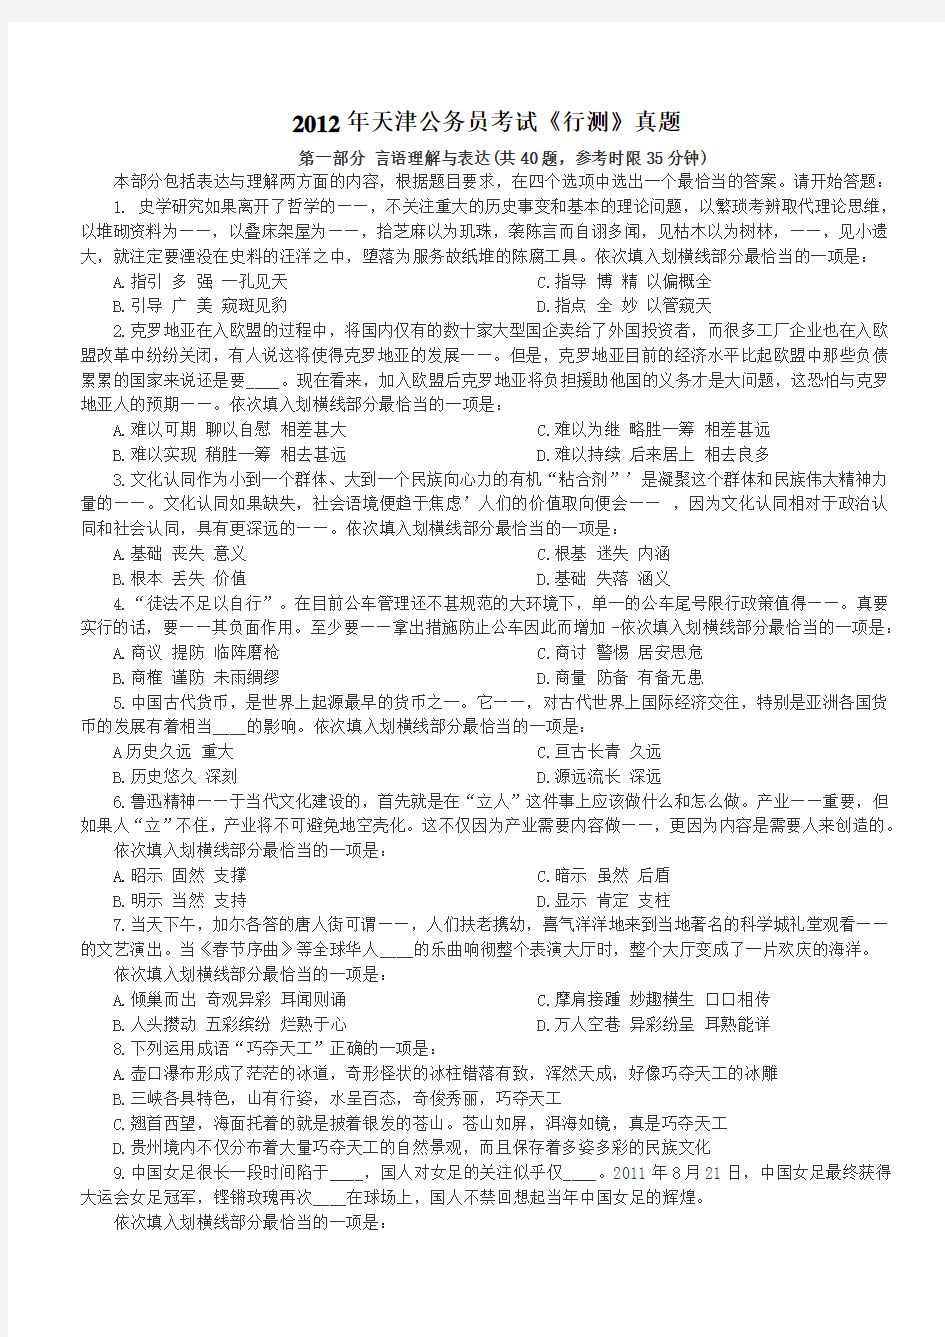 2012年天津公务员考试行政能力测试真题【完整+答案+解析】